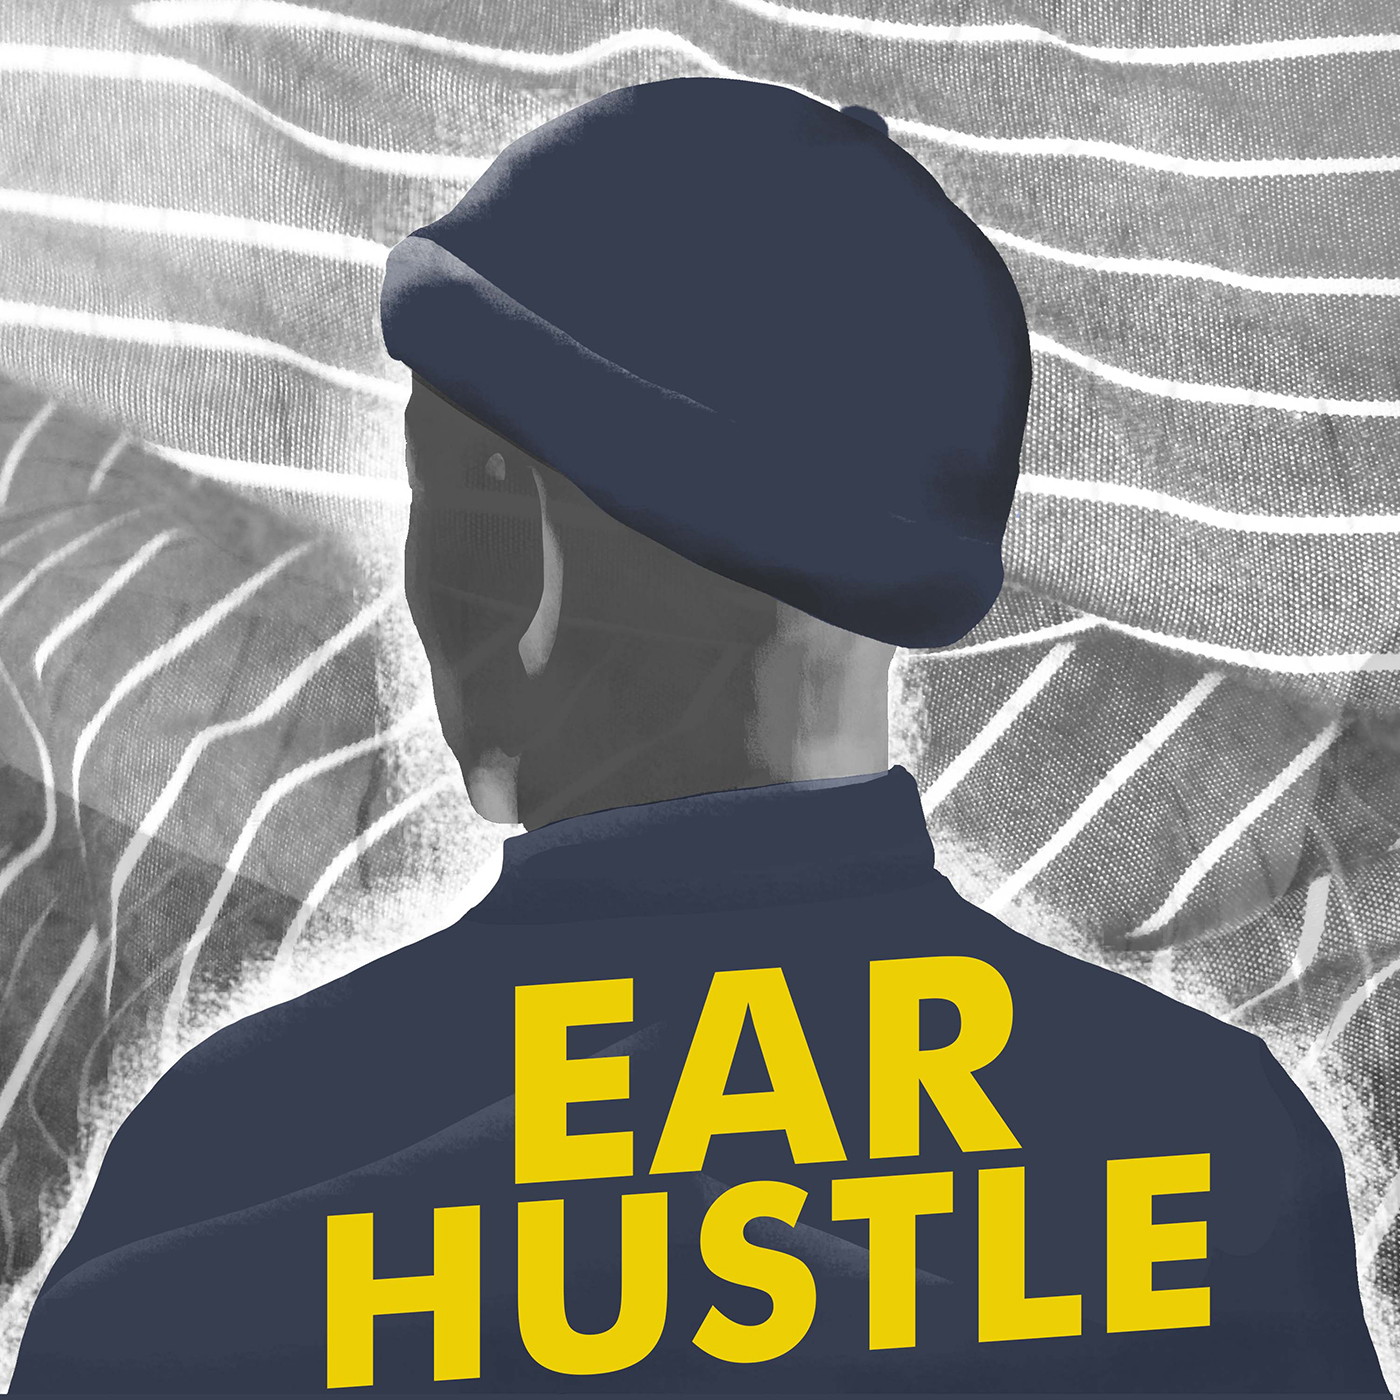 Meet Ear Hustle